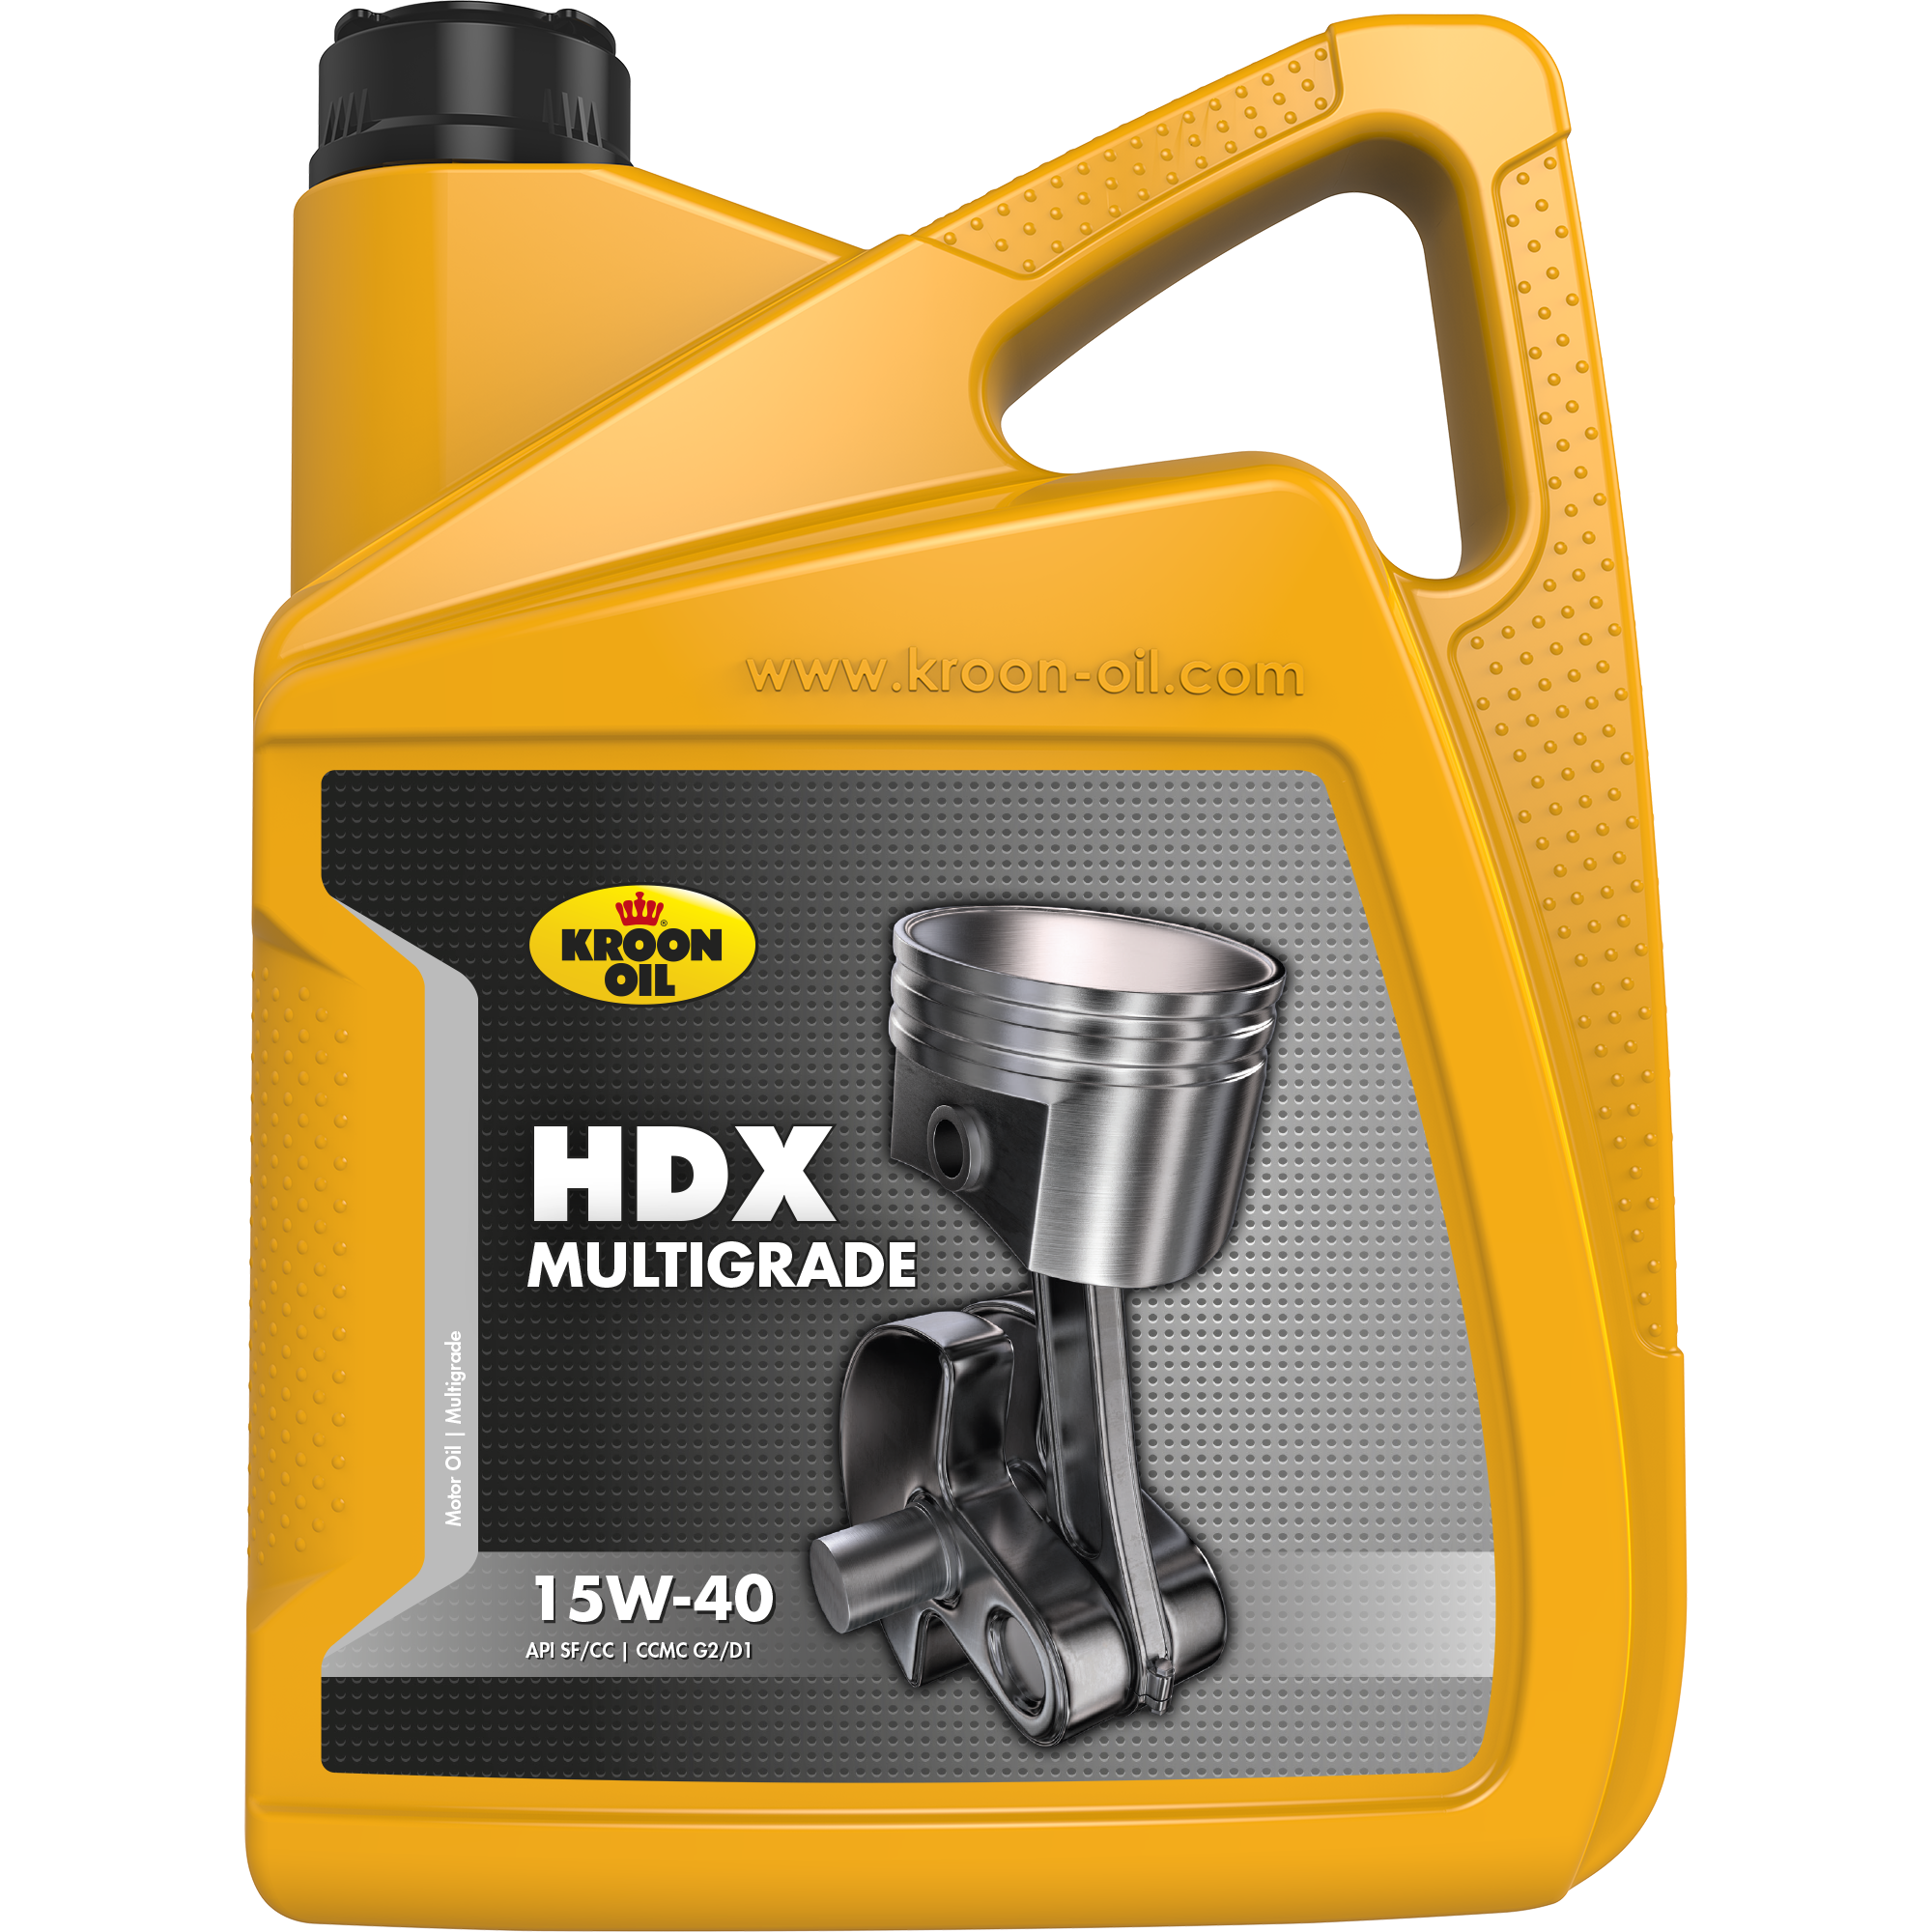 00326-5 HDX 15W-40 is een motorolie gebaseerd op hoogwaardige solvent geraffineerde basisoliën.